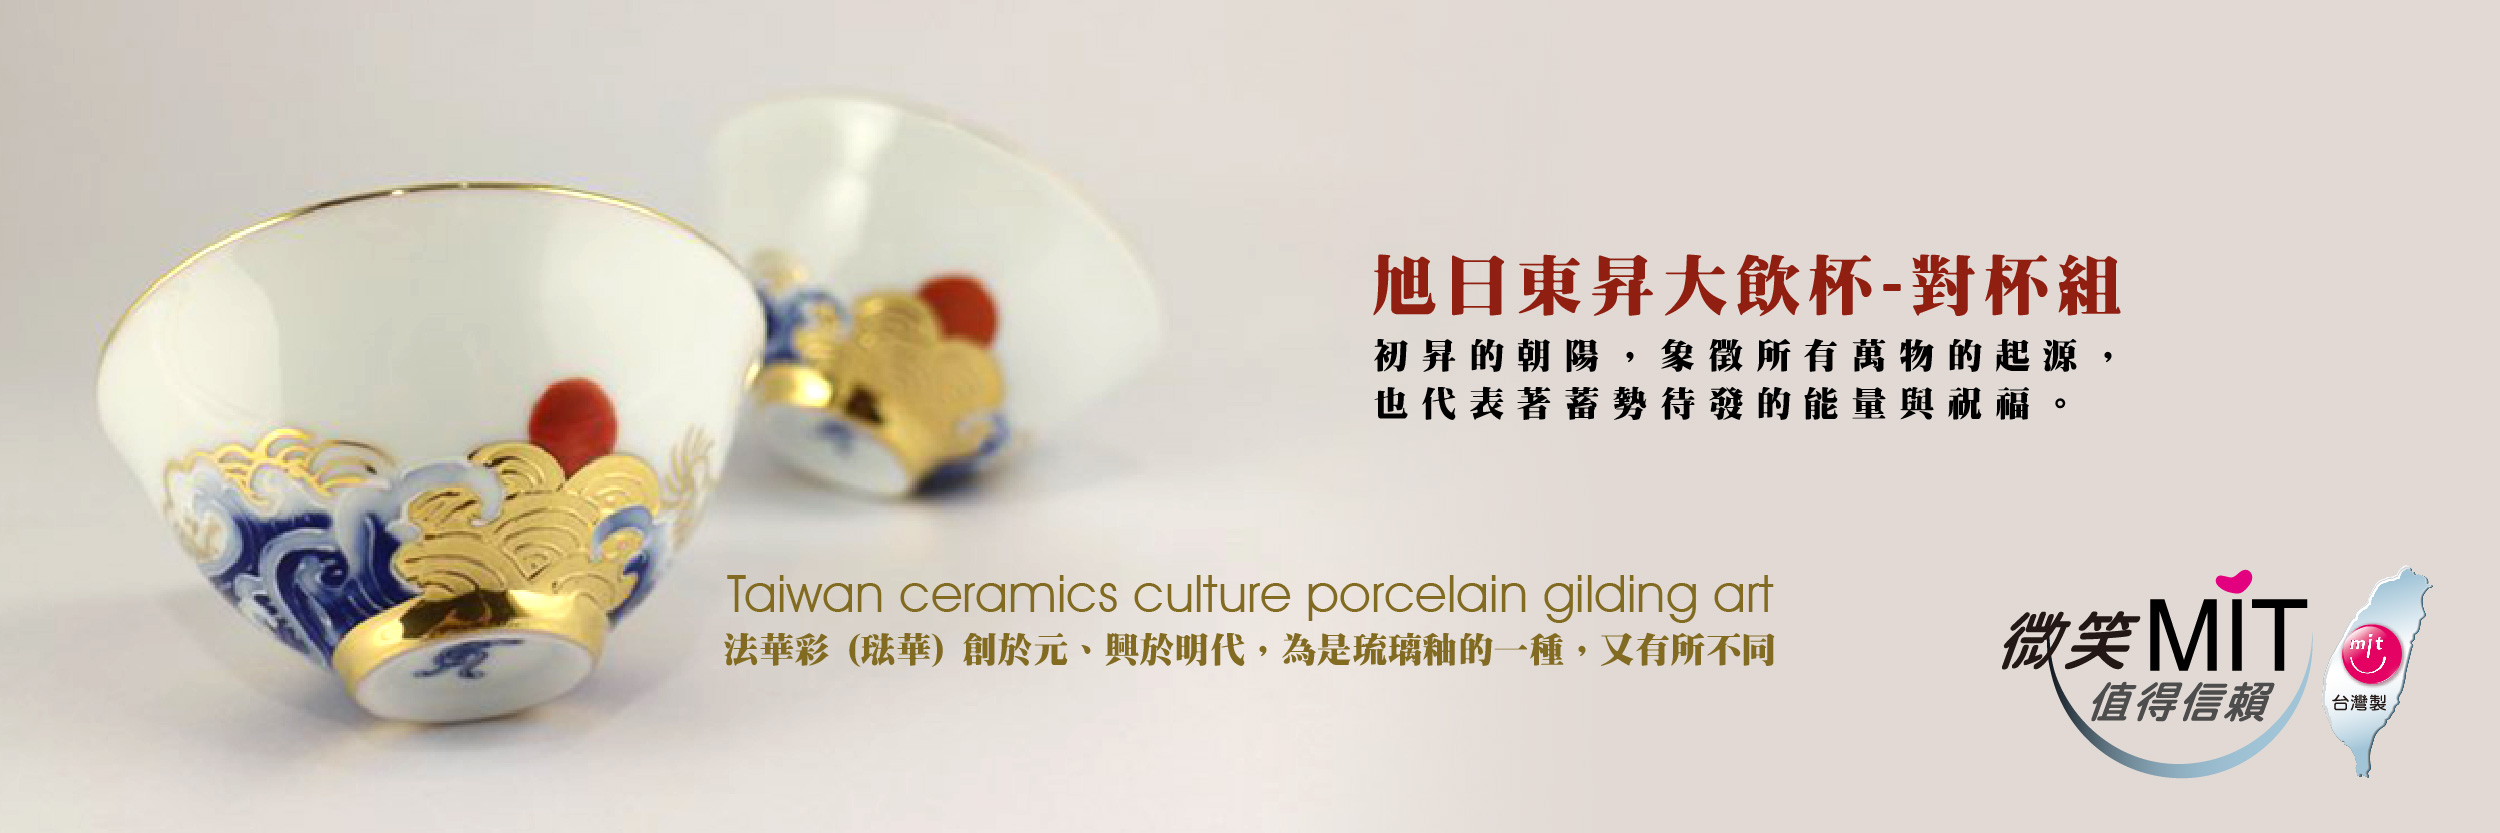 【微笑台灣MIT認證金選】旭日東昇大飲杯-對杯組 Taiwan porcelain craft gilding Art